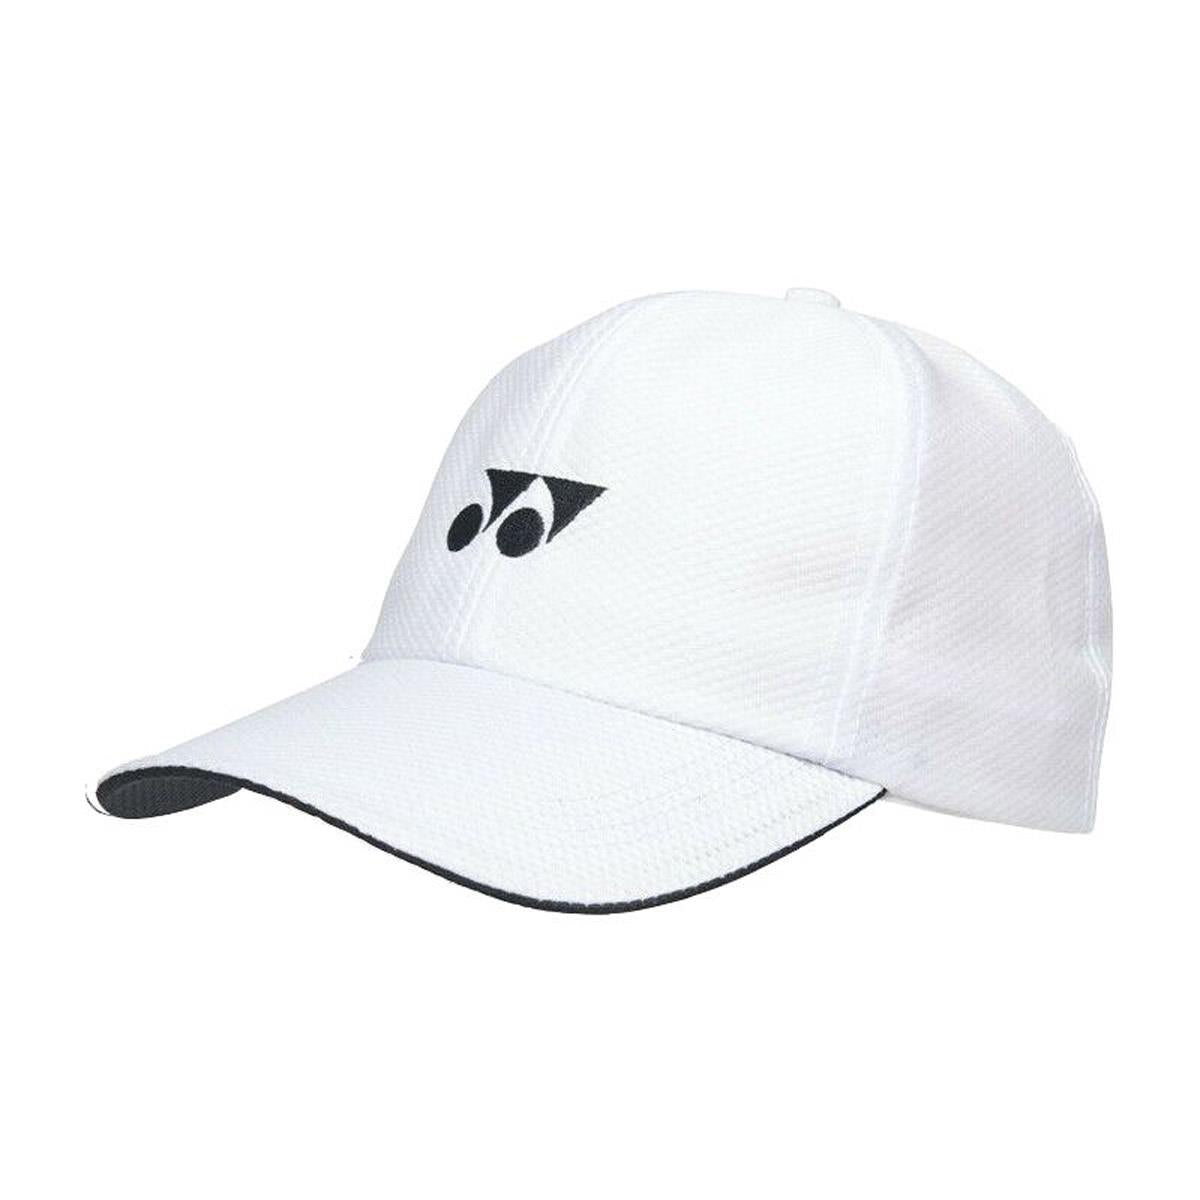 Yonex W341 Tennis Cap - White